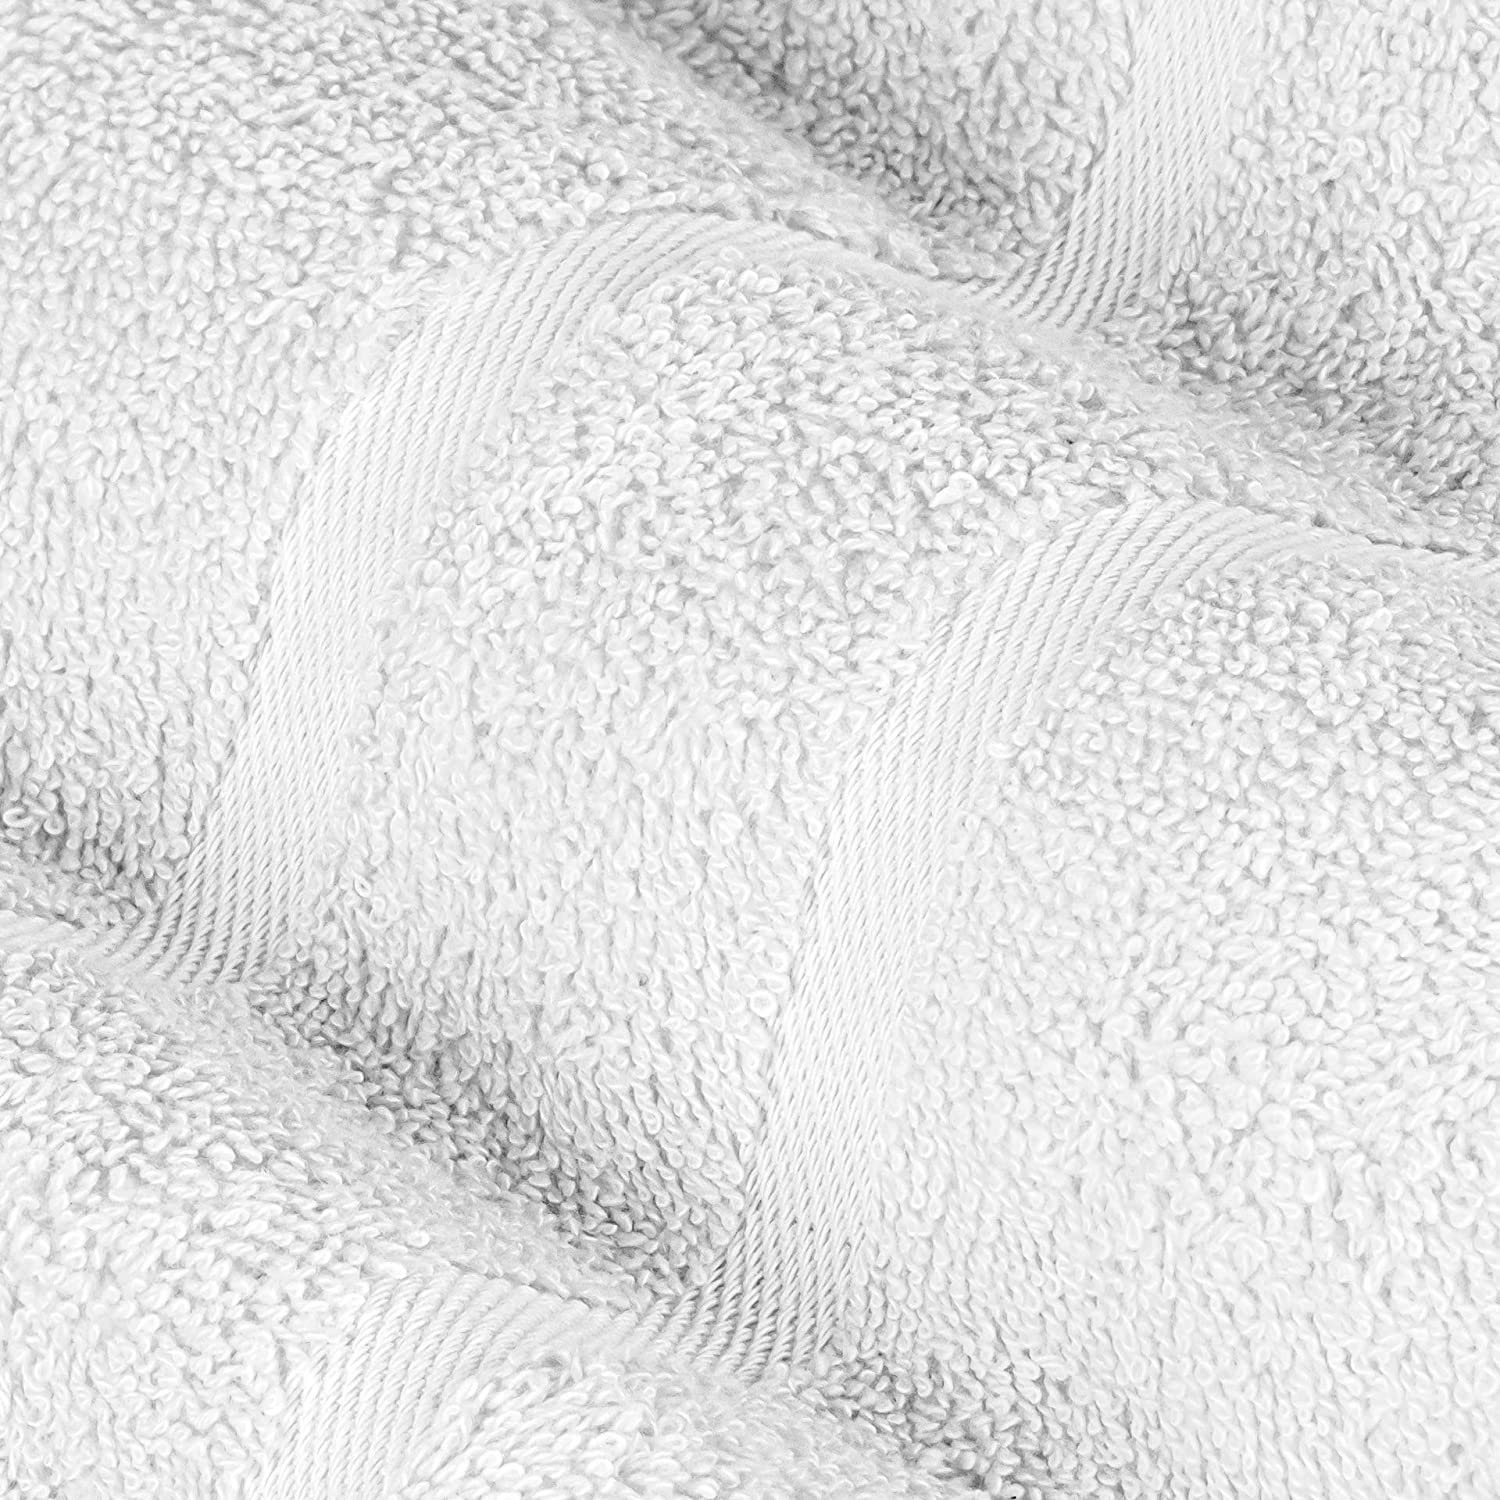 StickandShine Handtuch Set 500 1x 1x Duschtuch Handtuch Saunatuch 100% SET als Weiß Baumwolle 100% GSM Baumwolle Badetuch Pack, 1x Gästehandtuch verschiedenen 1x in 500 Farben Handtuch (5 5er Teilig) Frottee 1x GSM